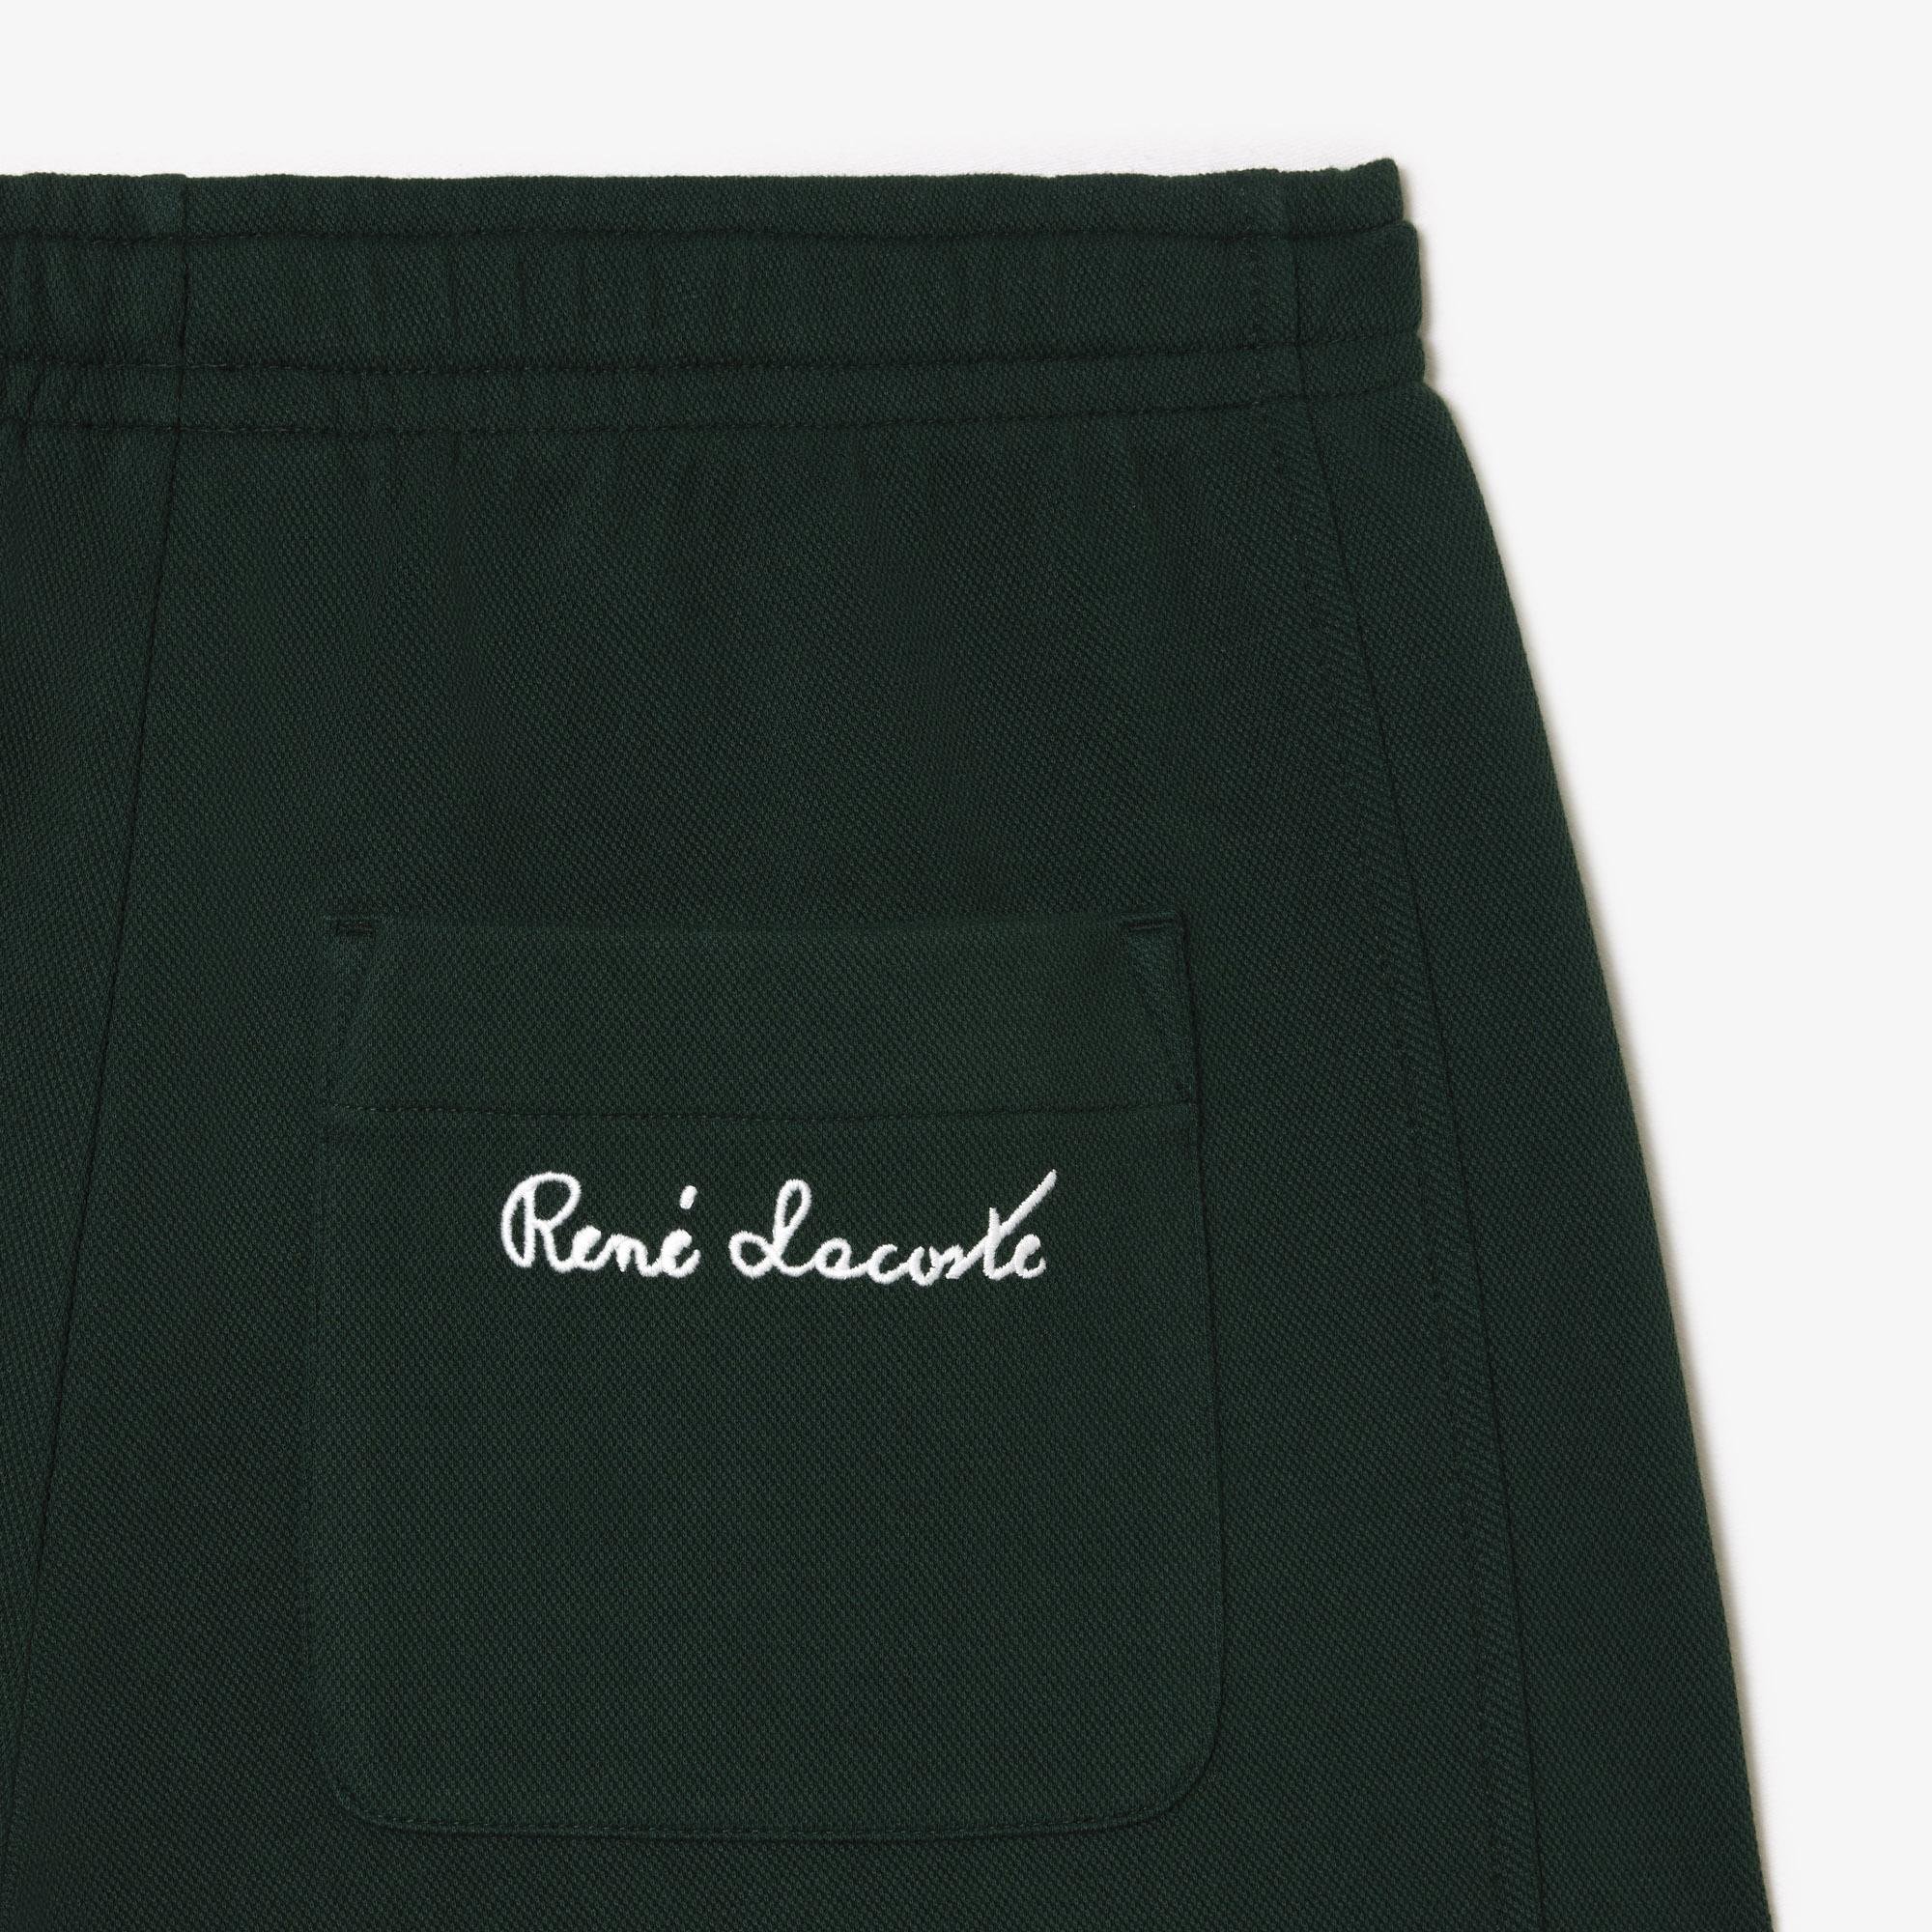 Lacoste Women's Piqué Sweatpants